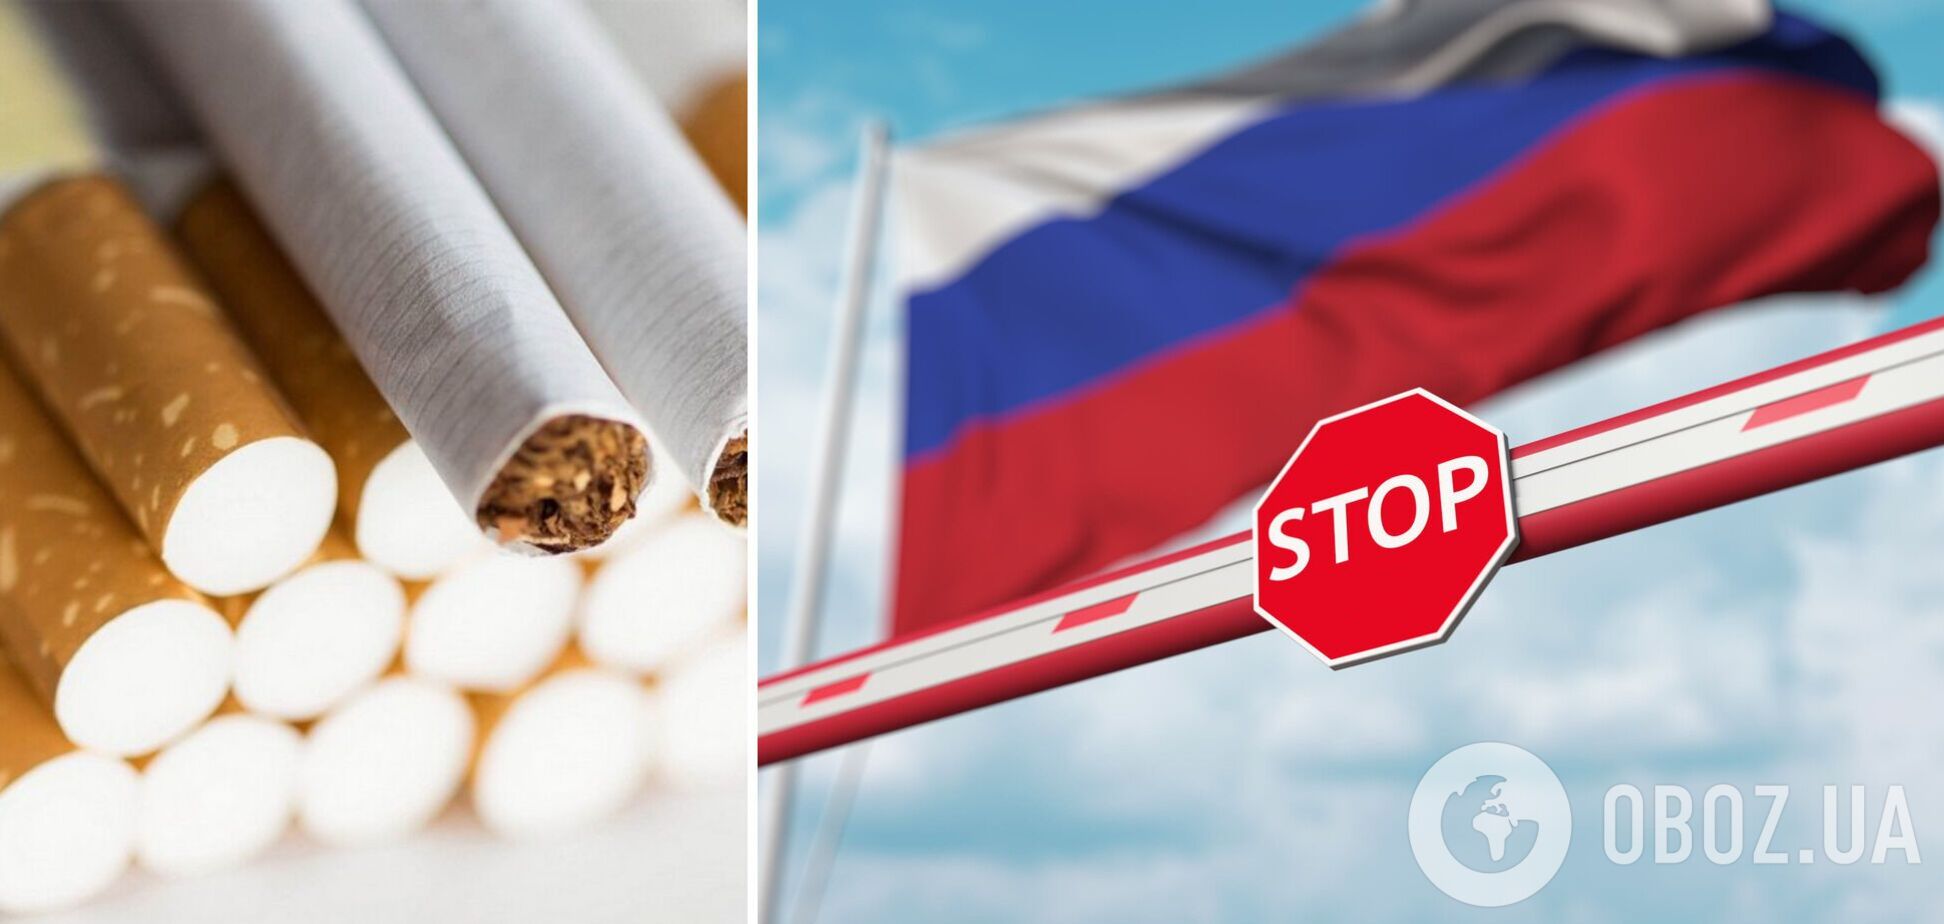 Один из мировых лидеров по производству сигарет Philip Morris уходит с России